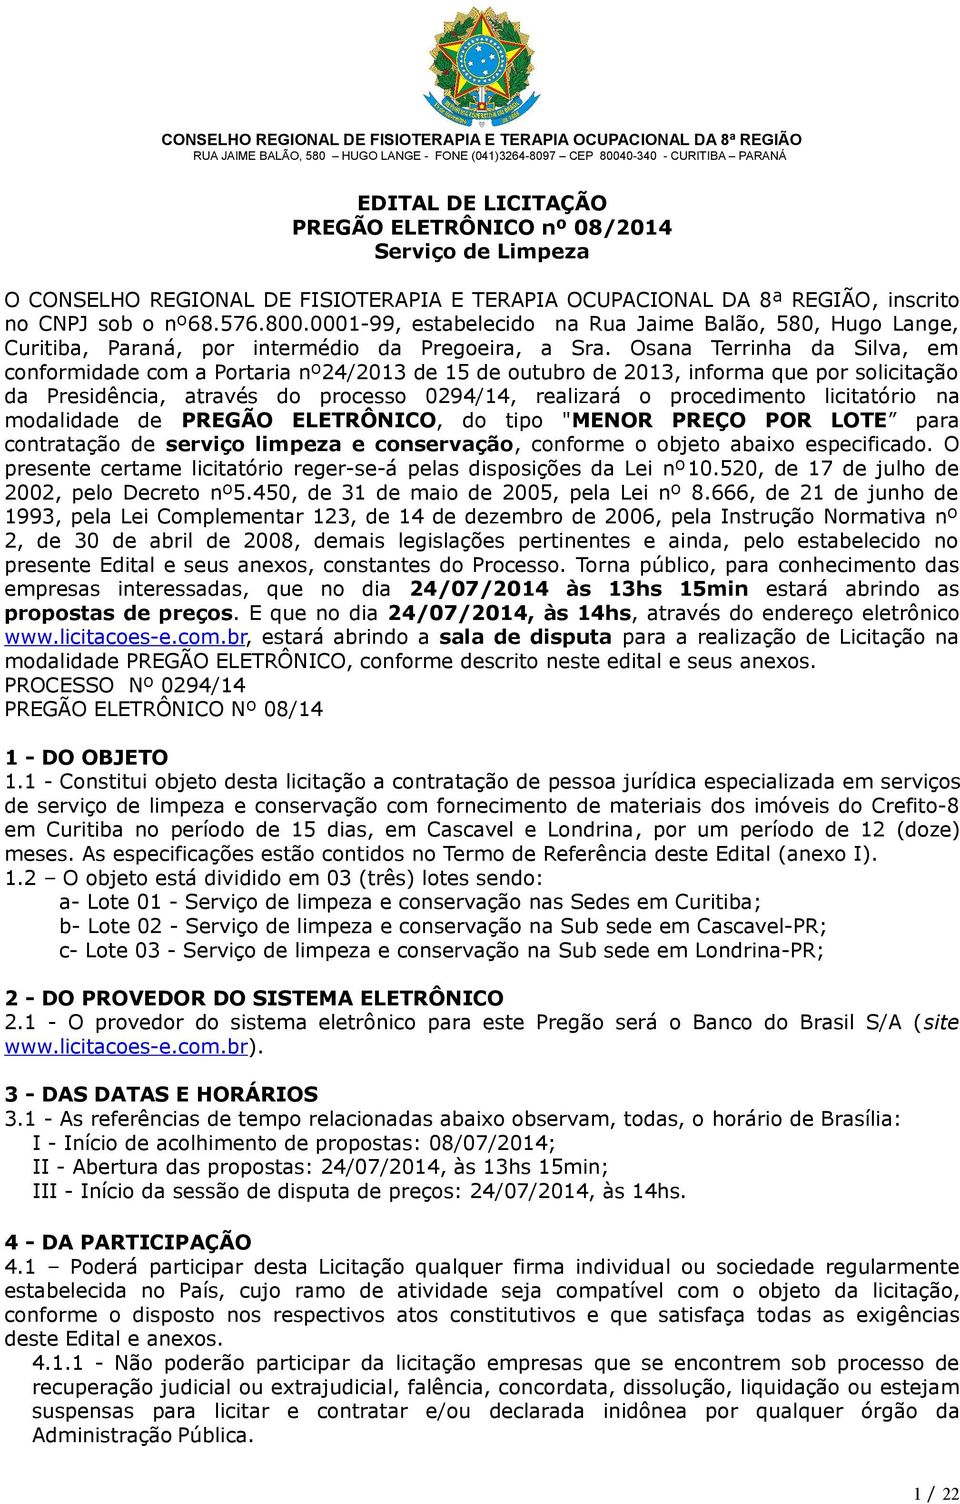 Osana Terrinha da Silva, em conformidade com a Portaria nº24/2013 de 15 de outubro de 2013, informa que por solicitação da Presidência, através do processo 0294/14, realizará o procedimento